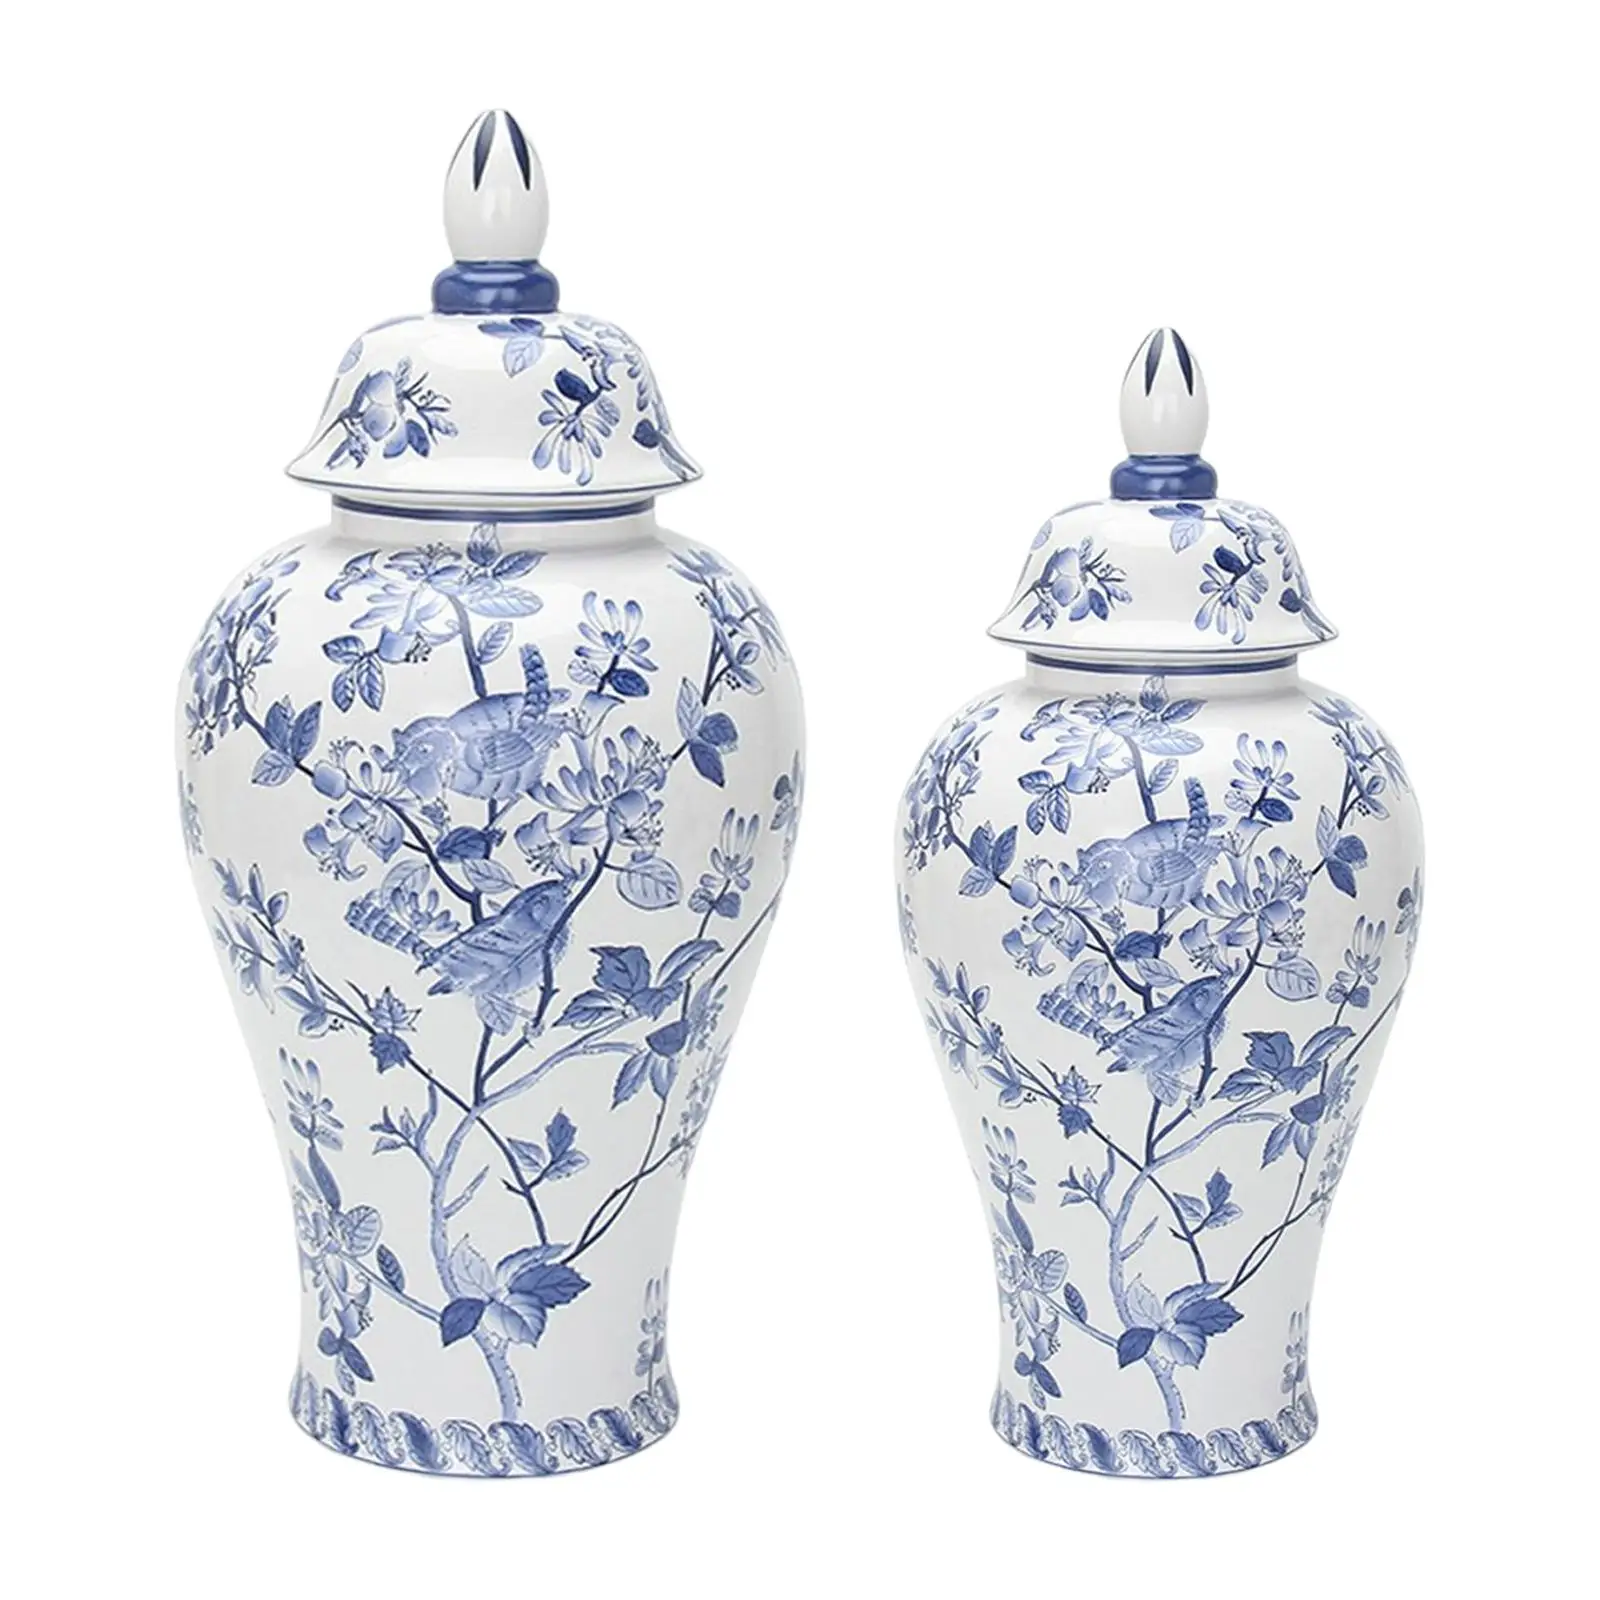 Porcelain Ginger Jar Planter Storage Ceramic Flower Vase for Bedroom Home